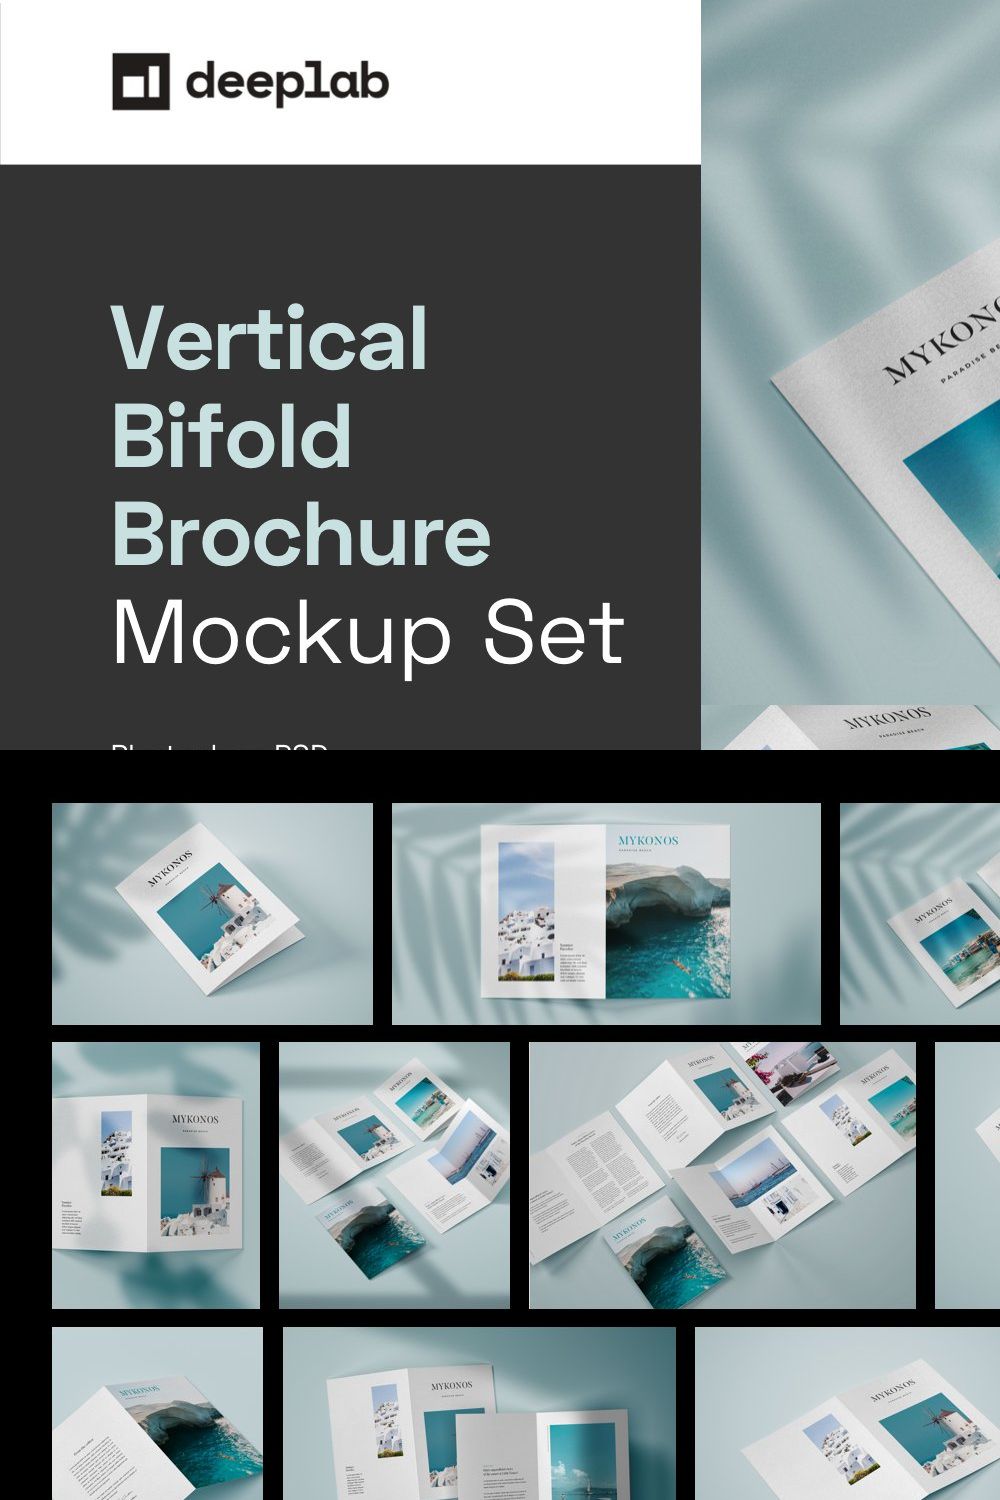 Vertical Bifold Brochure Mockup Set pinterest preview image.